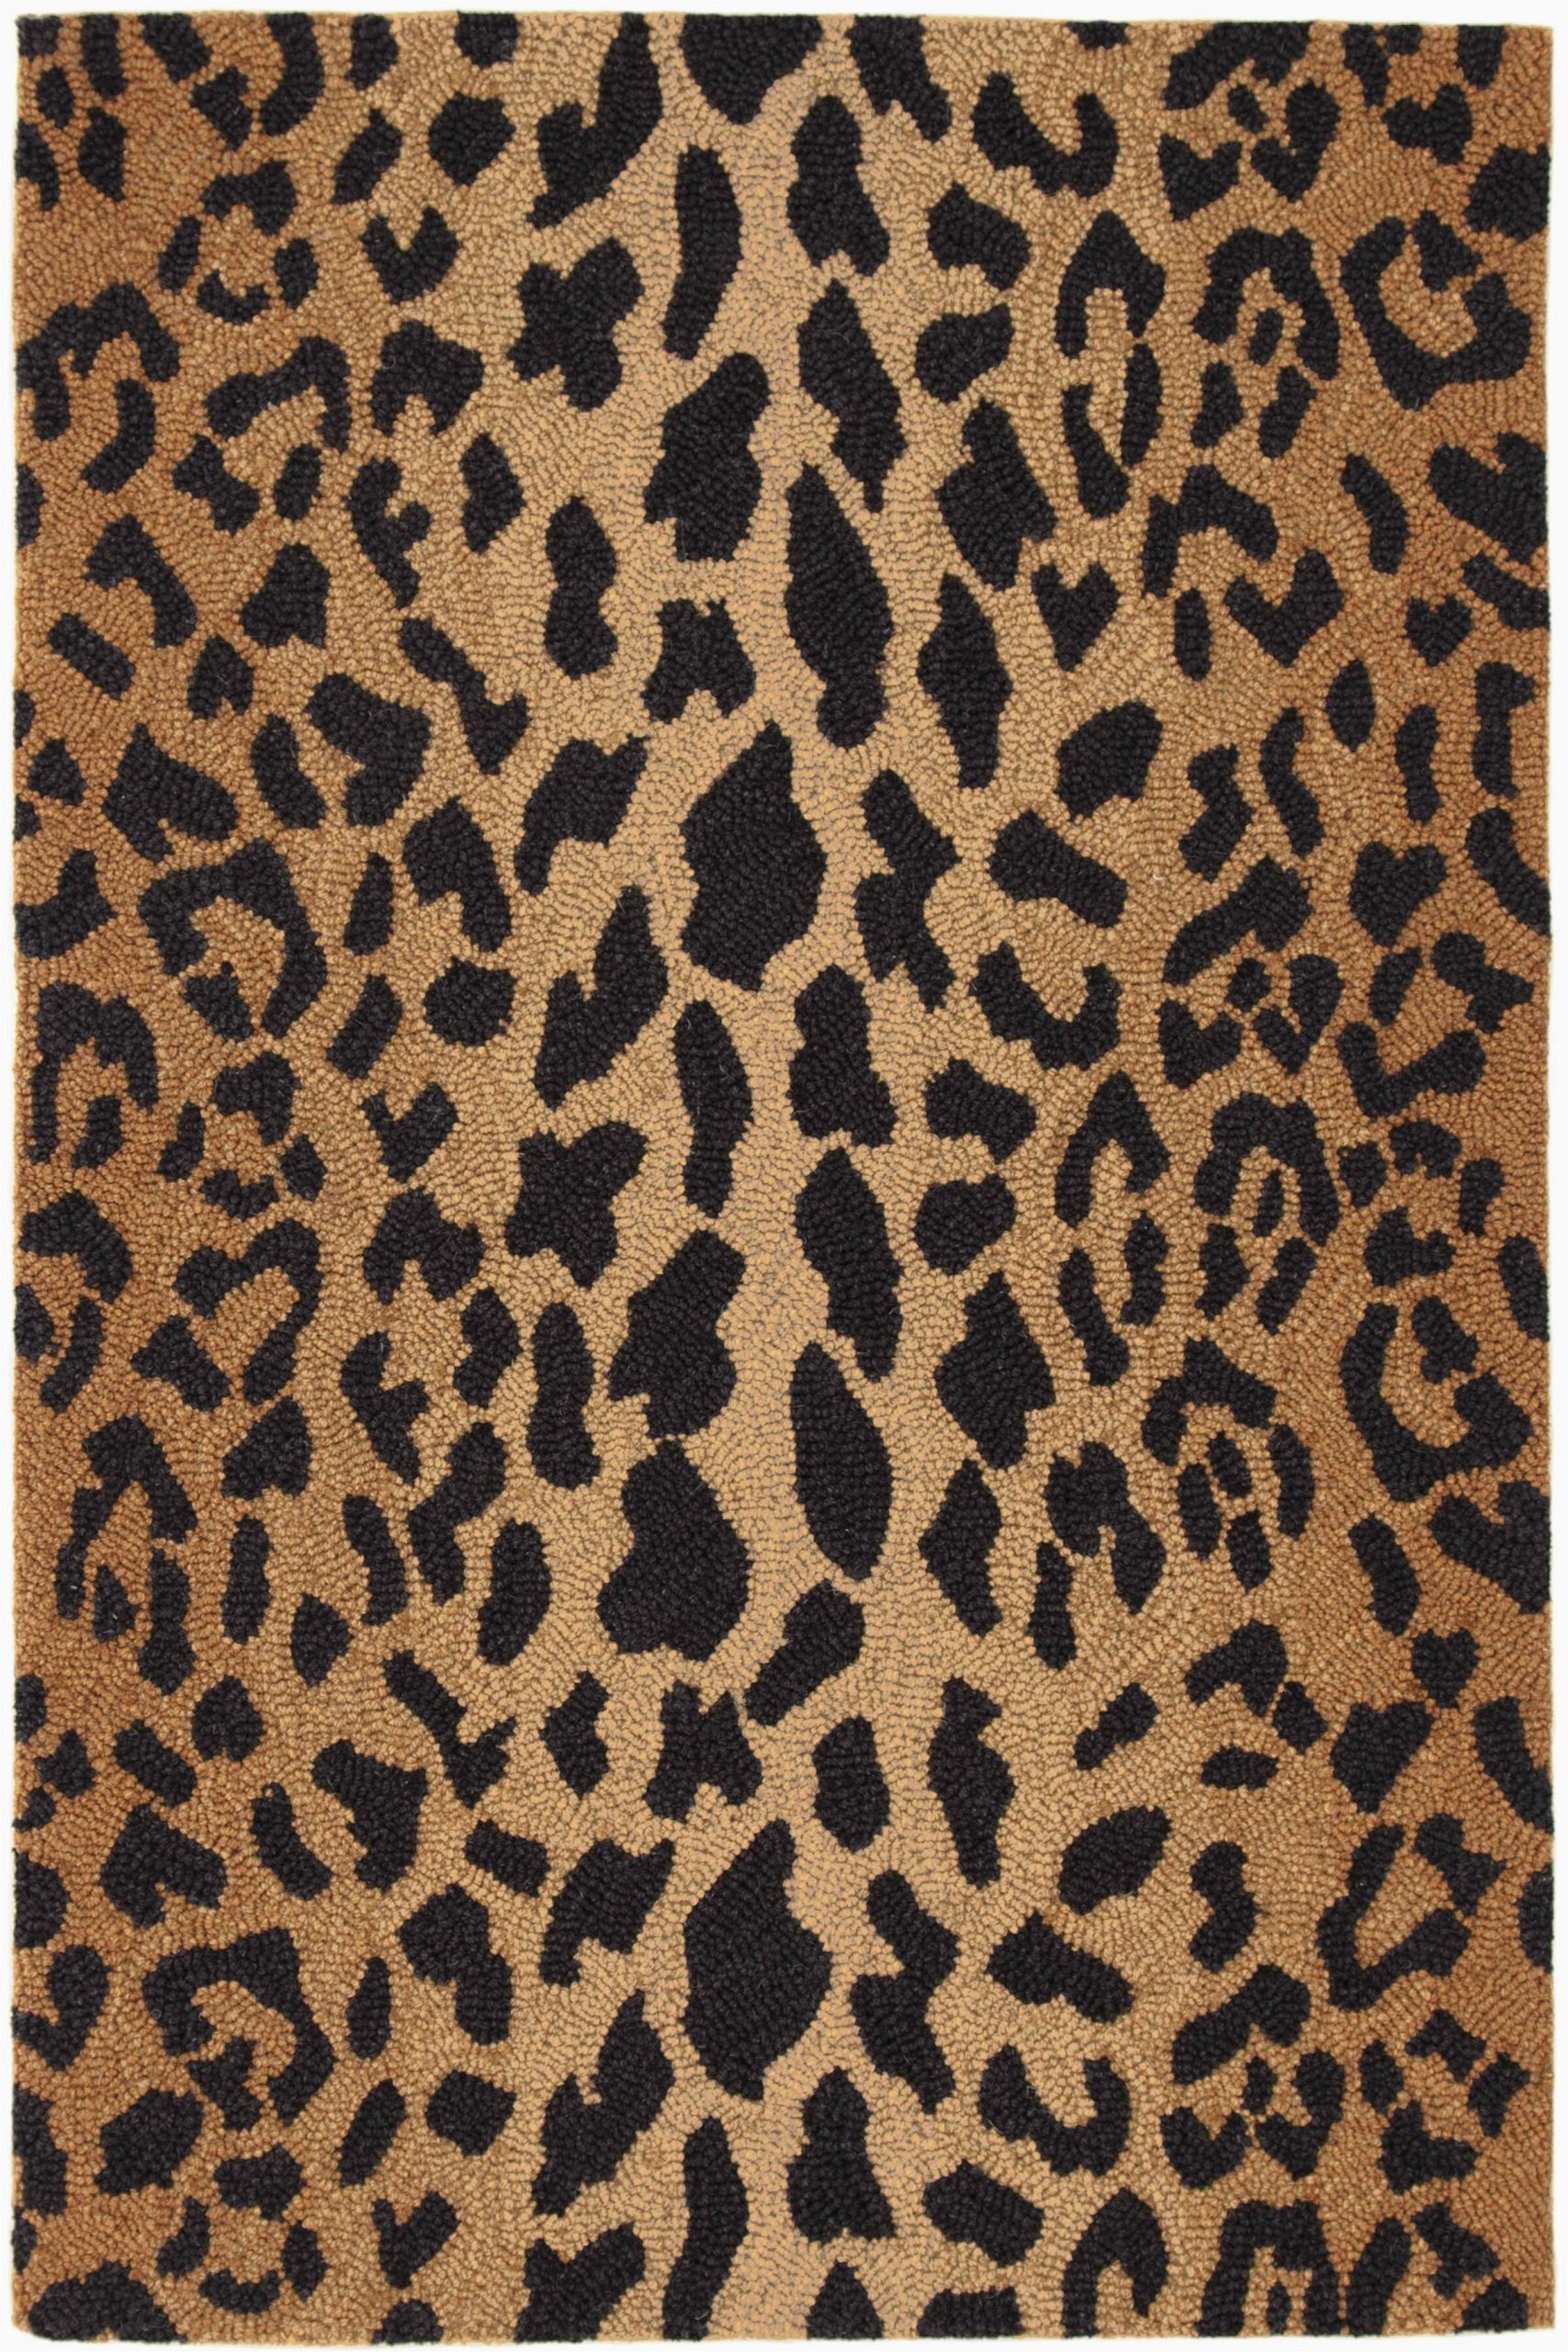 Wool Animal Print area Rugs Leopard Animal Print Hand Hooked Wool Brown Black area Rug